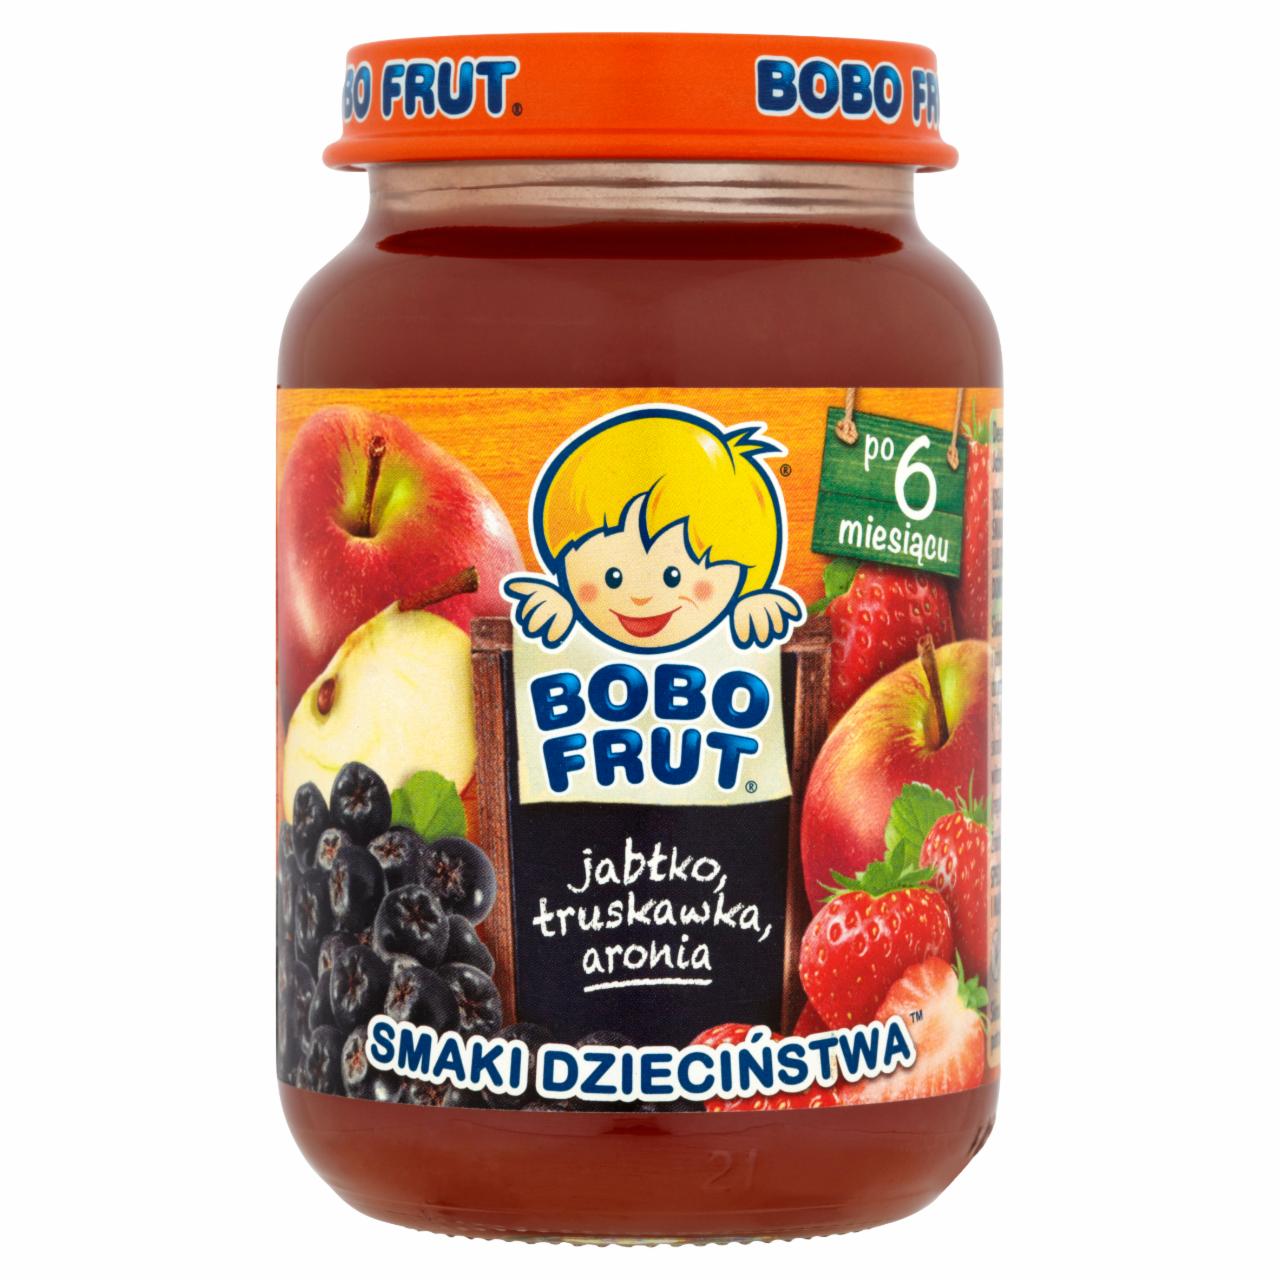 Zdjęcia - Bobo Frut Smaki Dzieciństwa Jabłko truskawka aronia po 6 miesiącu 185 g